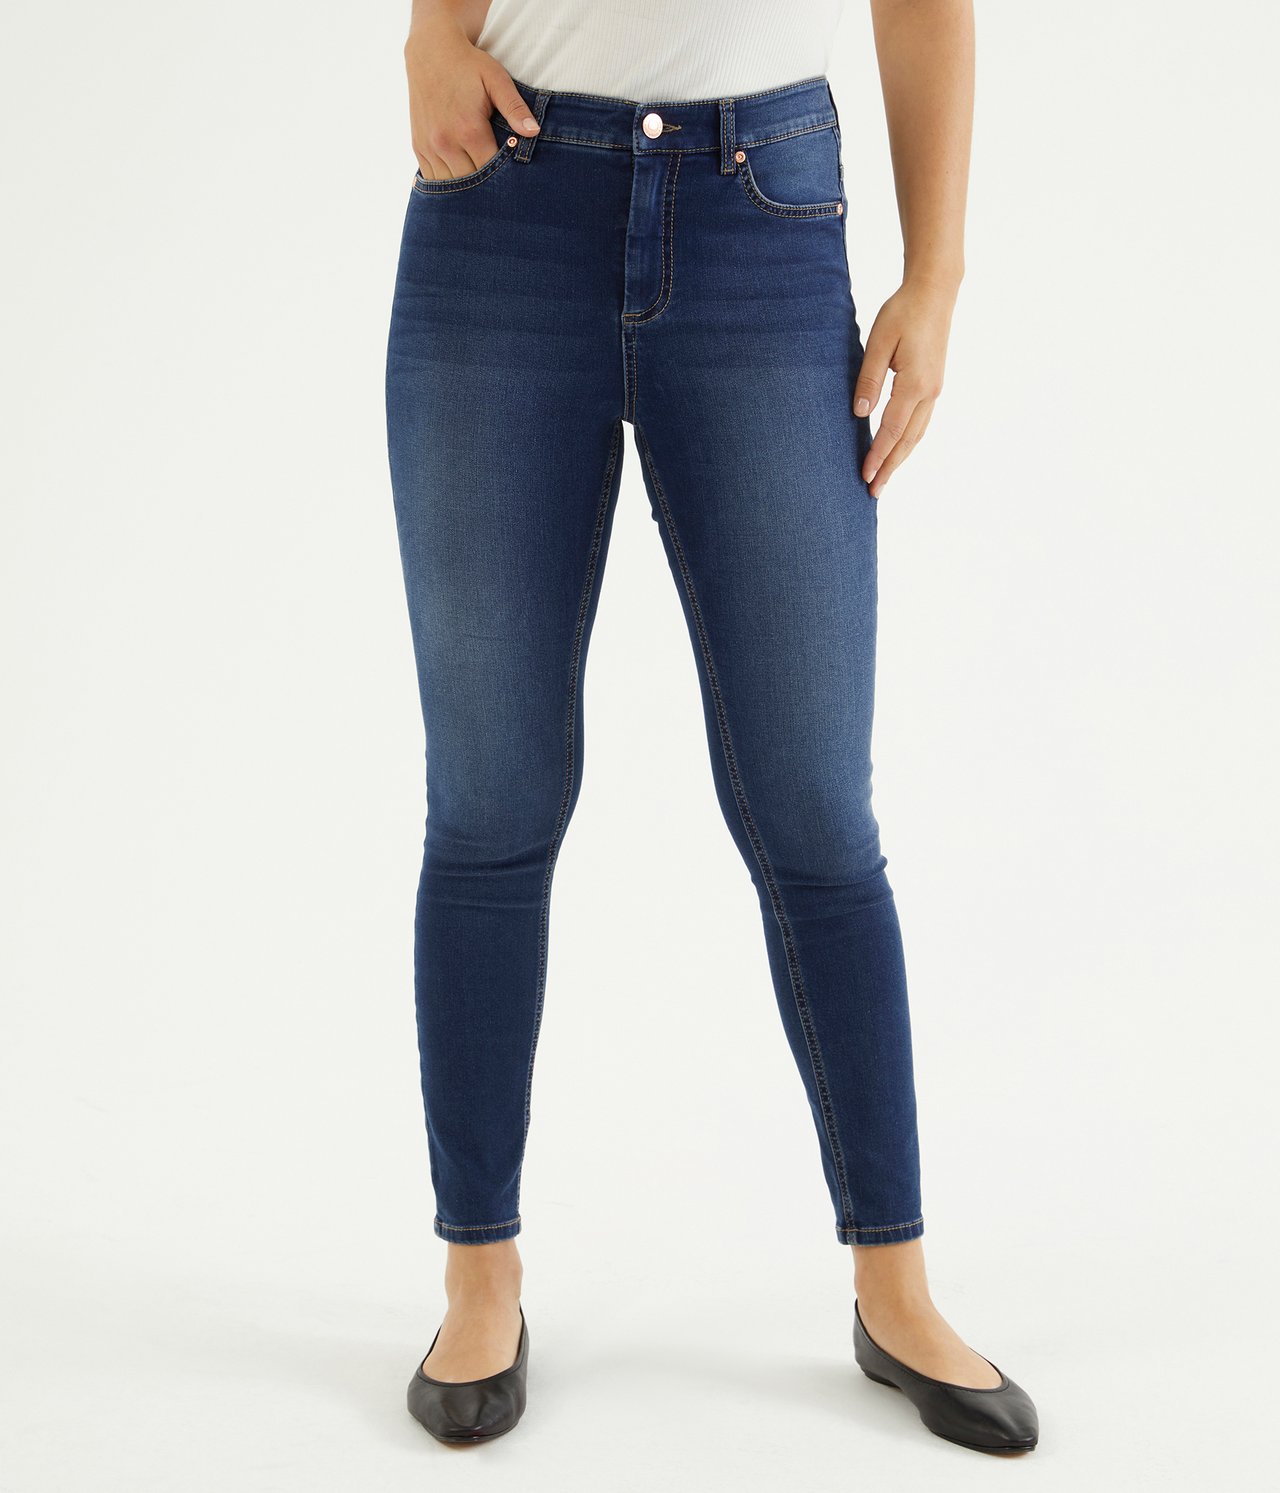 Super slim jeans short leg - Mørk denim - 3